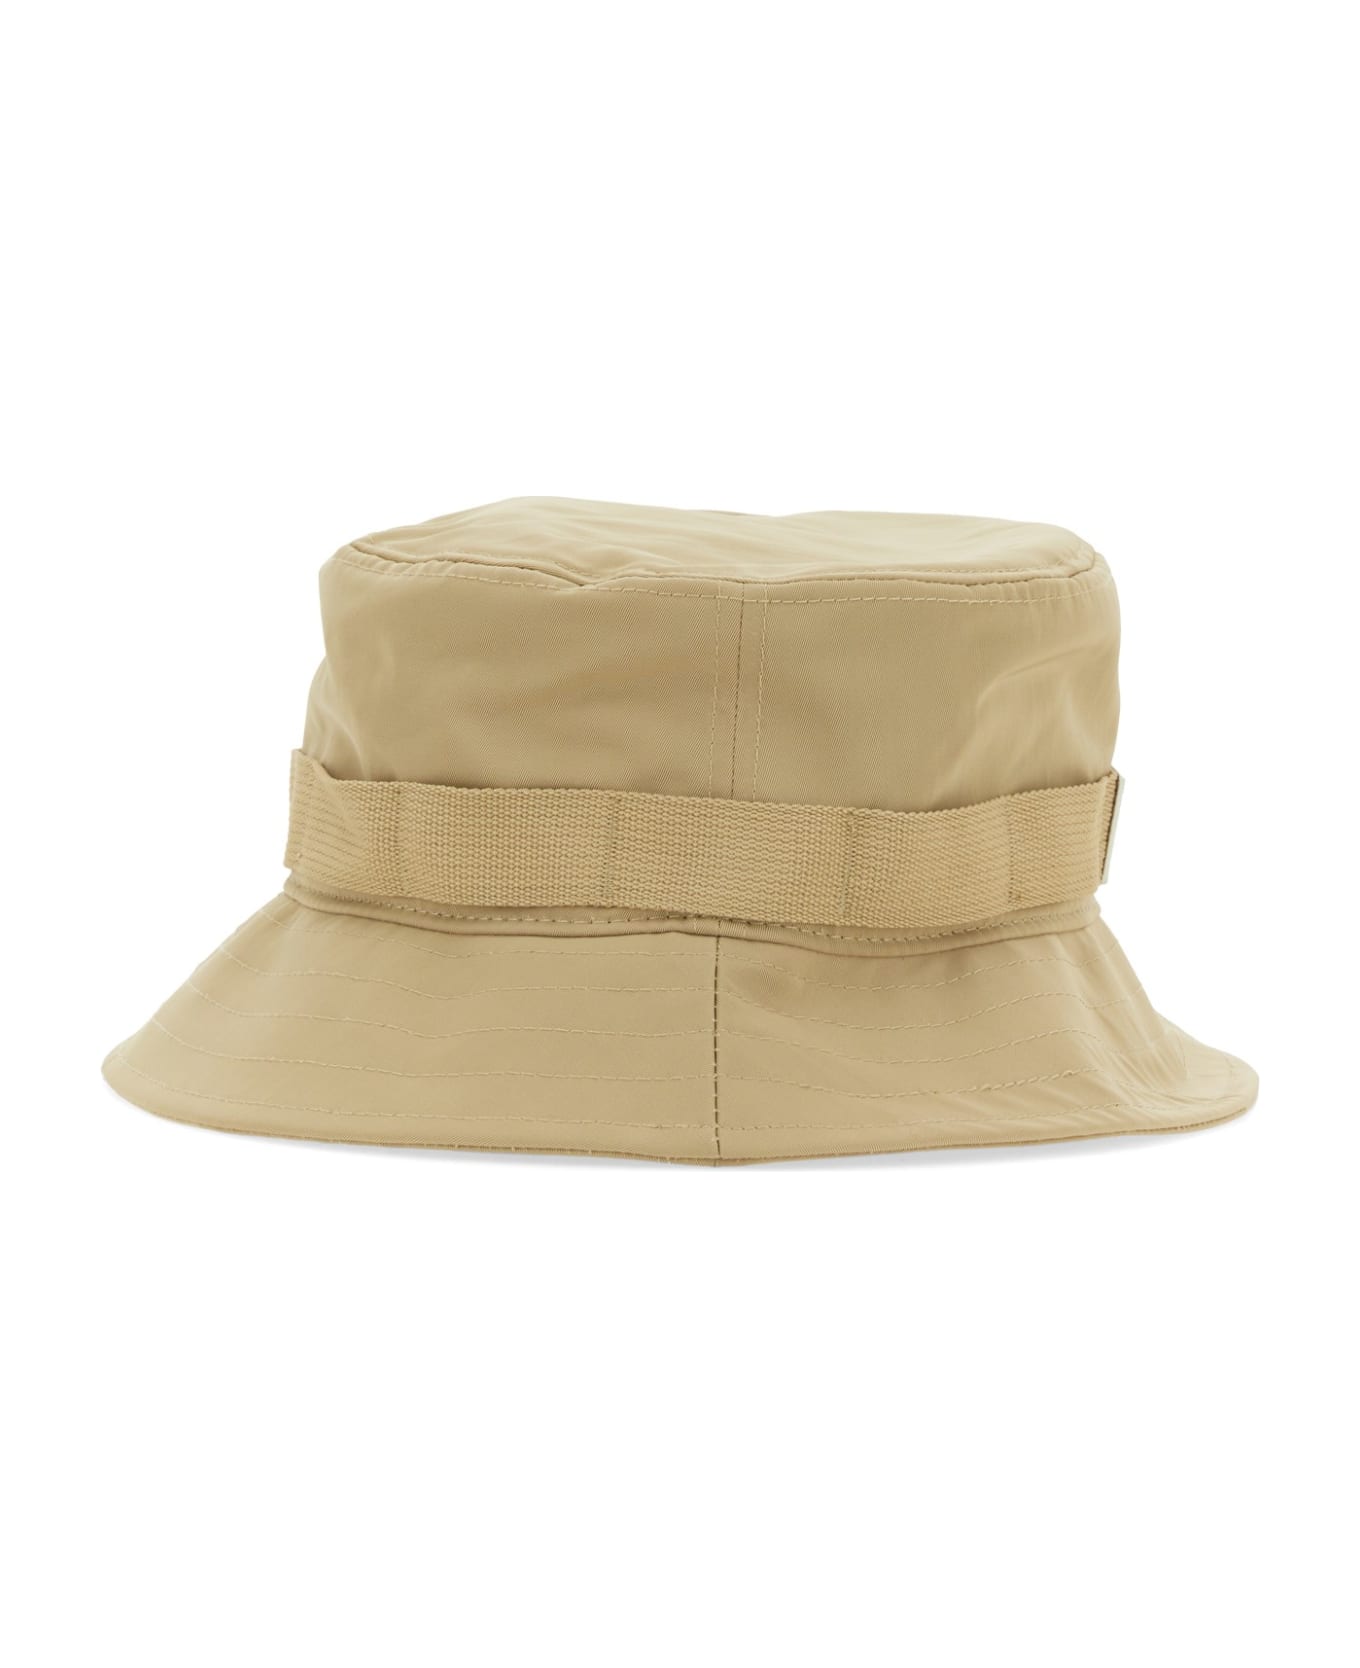 Kenzo Logo Strap Bucket Hat - Beige 帽子